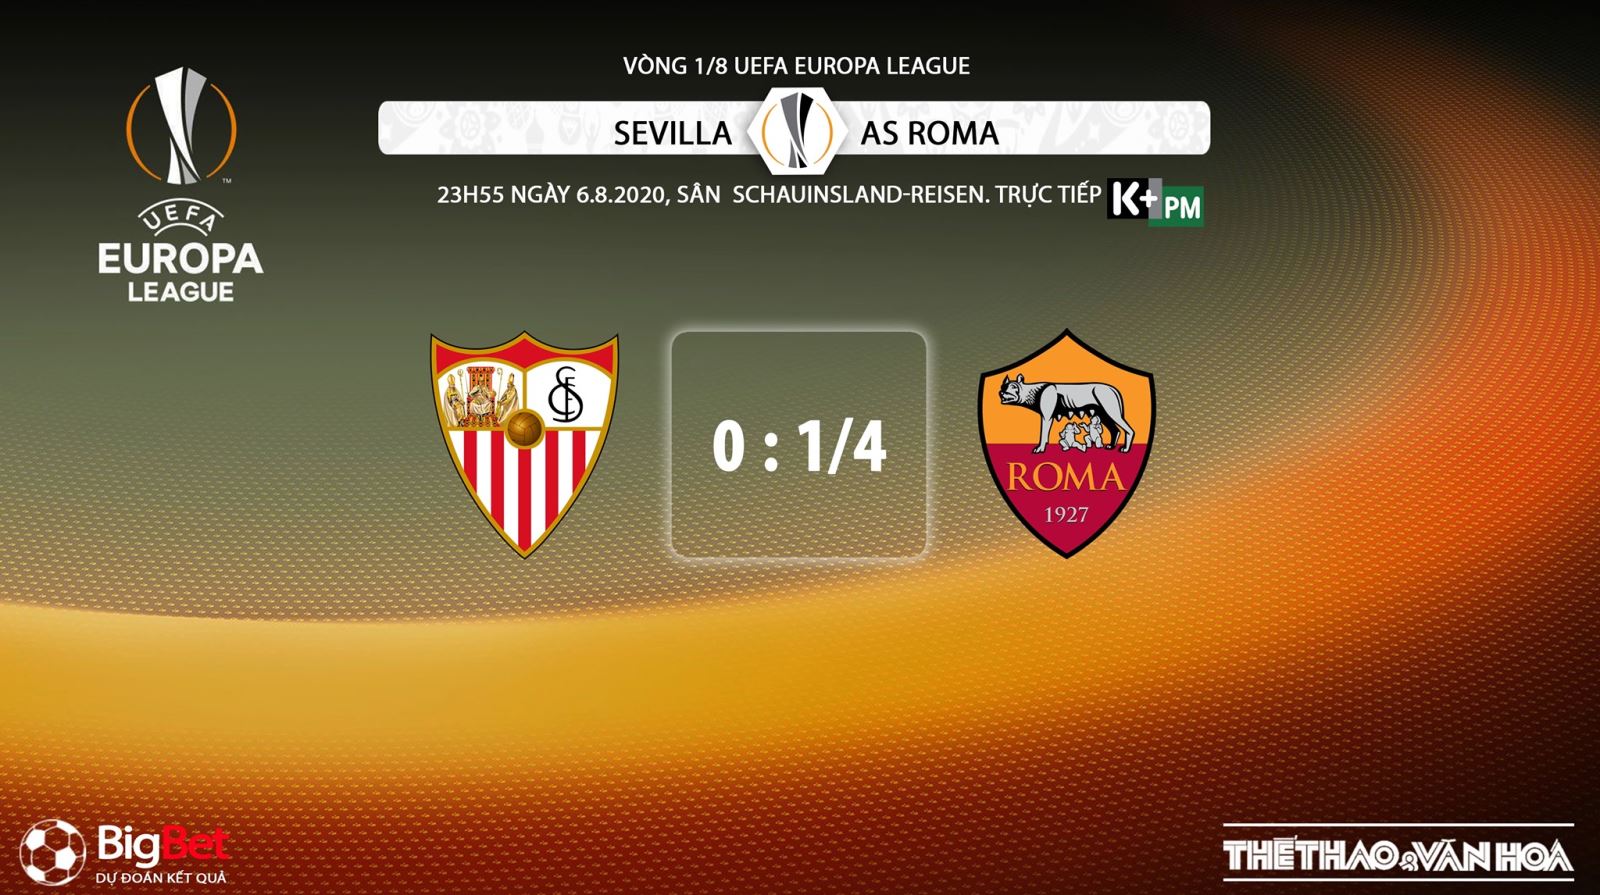 Sevilla vs Roma, nhận định bóng đá Sevilla vs Roma, kèo bóng đá Sevilla vs Roma, kèo bóng đá, nhận định bóng đá, kèo bóng đá, trực tiếp Sevilla vs Roma